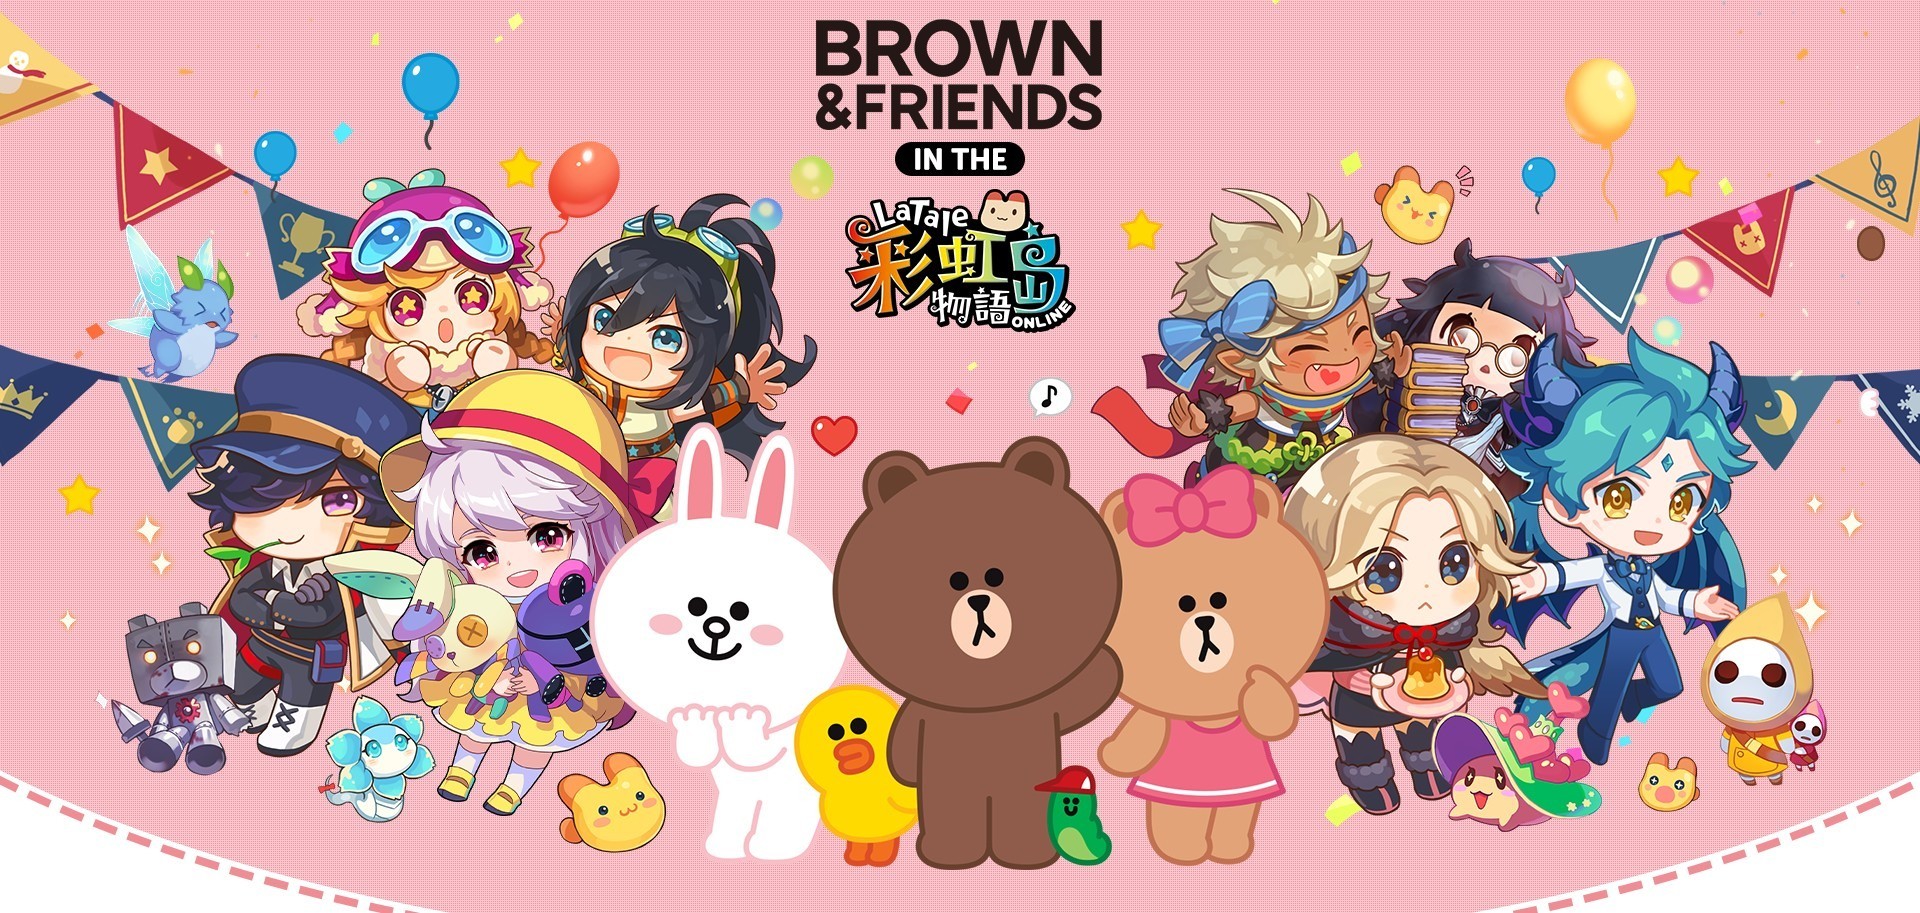 《彩虹岛物语 Online》预告推出《BROWN &amp; FRIENDS》熊大、兔兔等联名道具